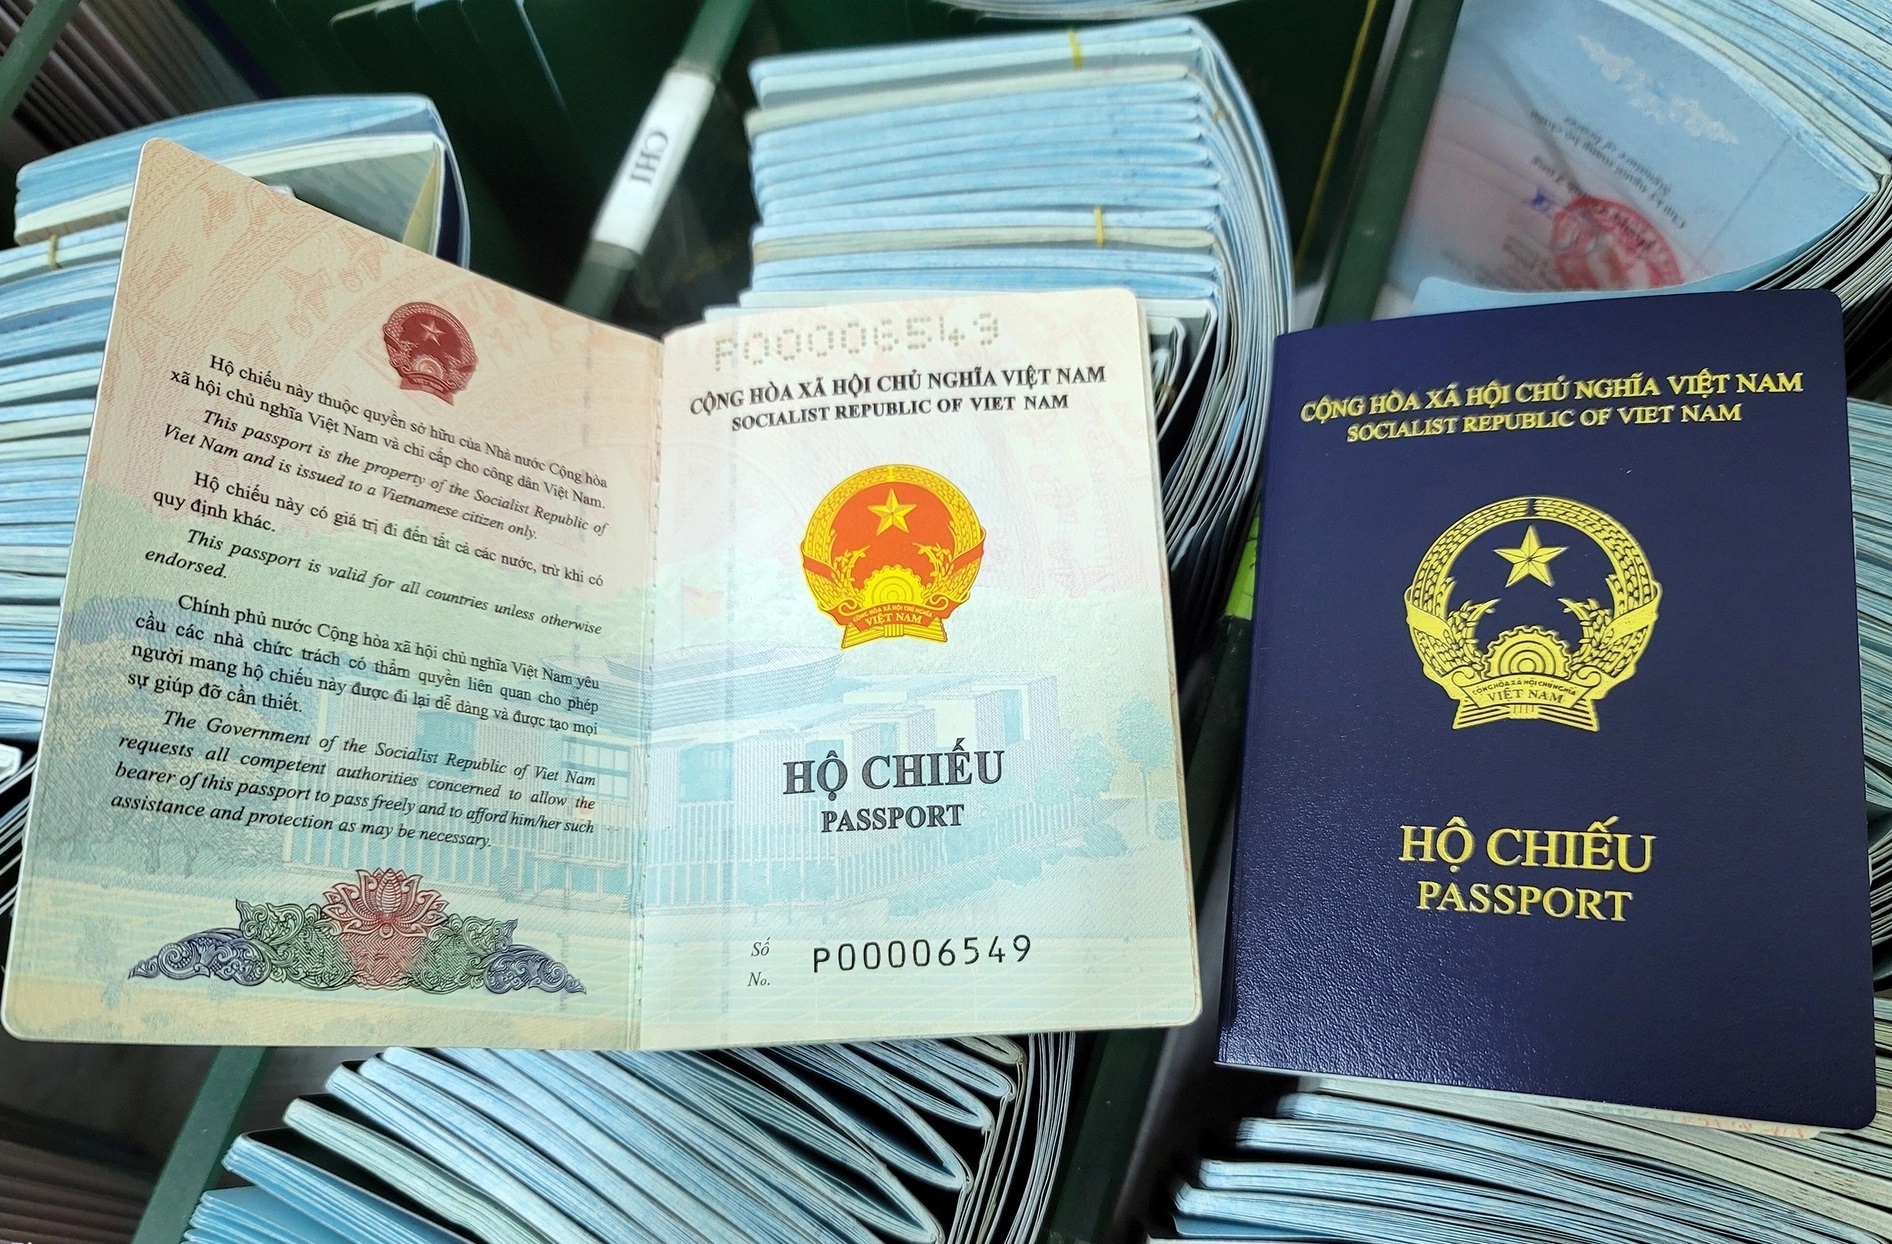 Đức ngừng cấp thị thực vào hộ chiếu phổ thông mẫu mới, doanh nghiệp thiệt hại vài trăm triệu đến 1 tỷ đồng - Ảnh 1.